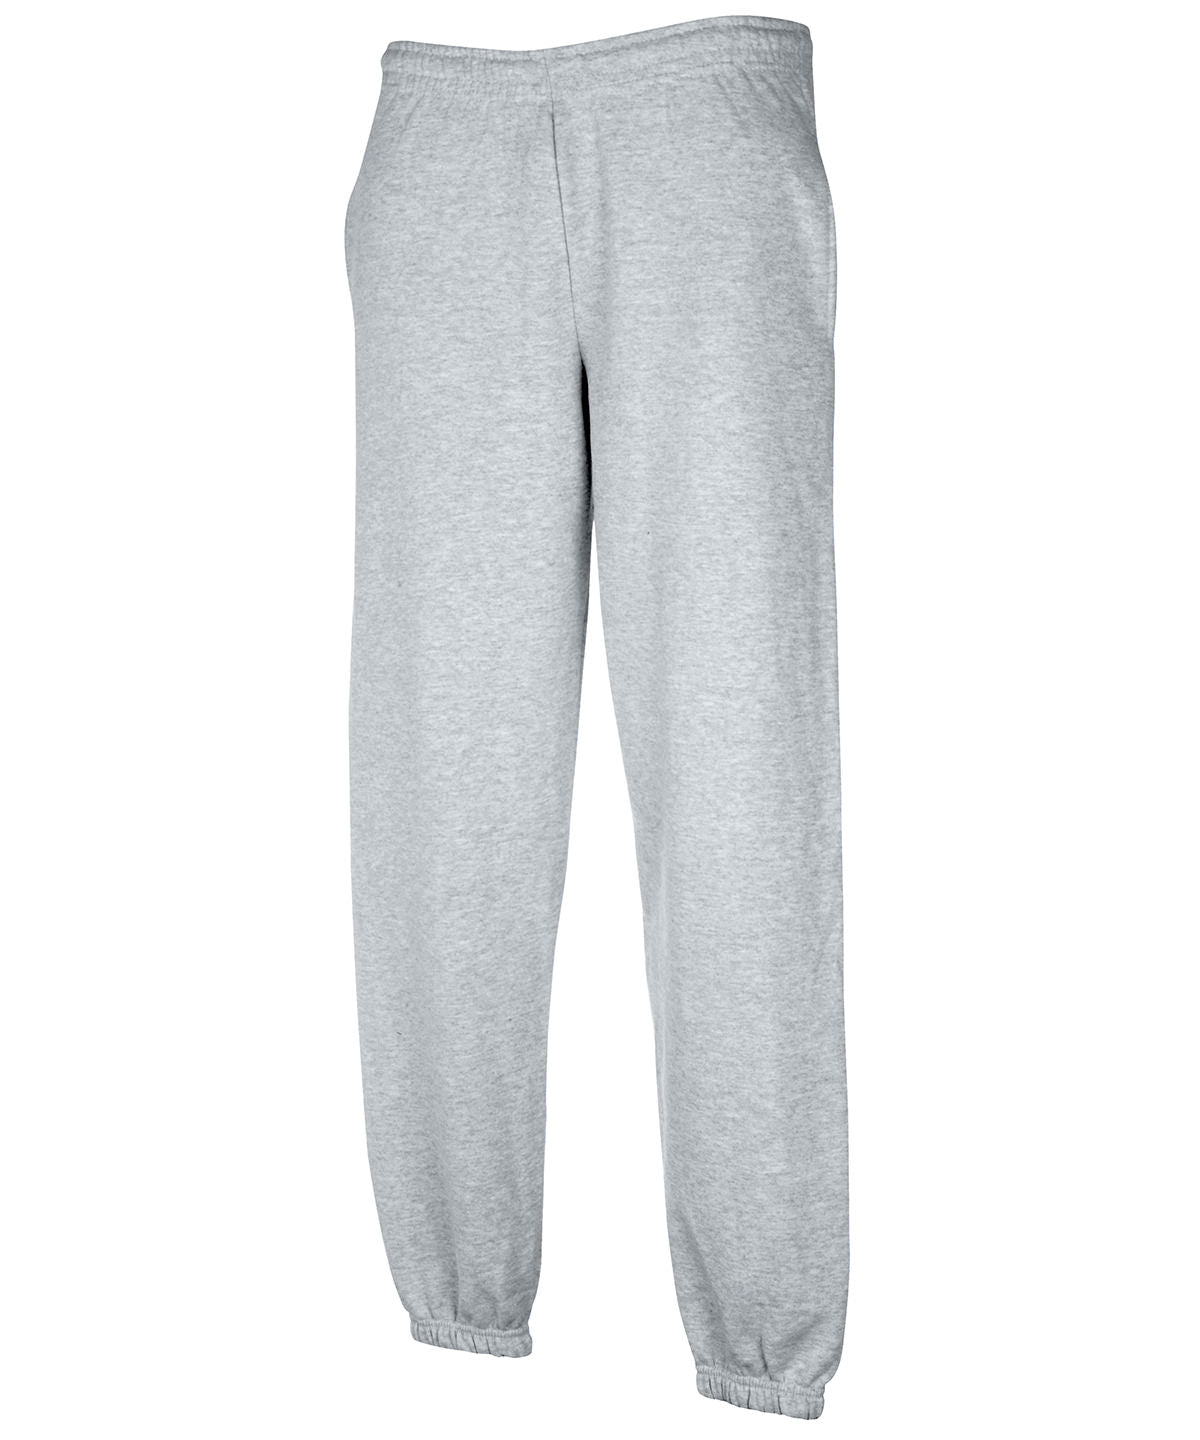 Joggingbuxur - Premium 70/30 Elasticated Sweatpants